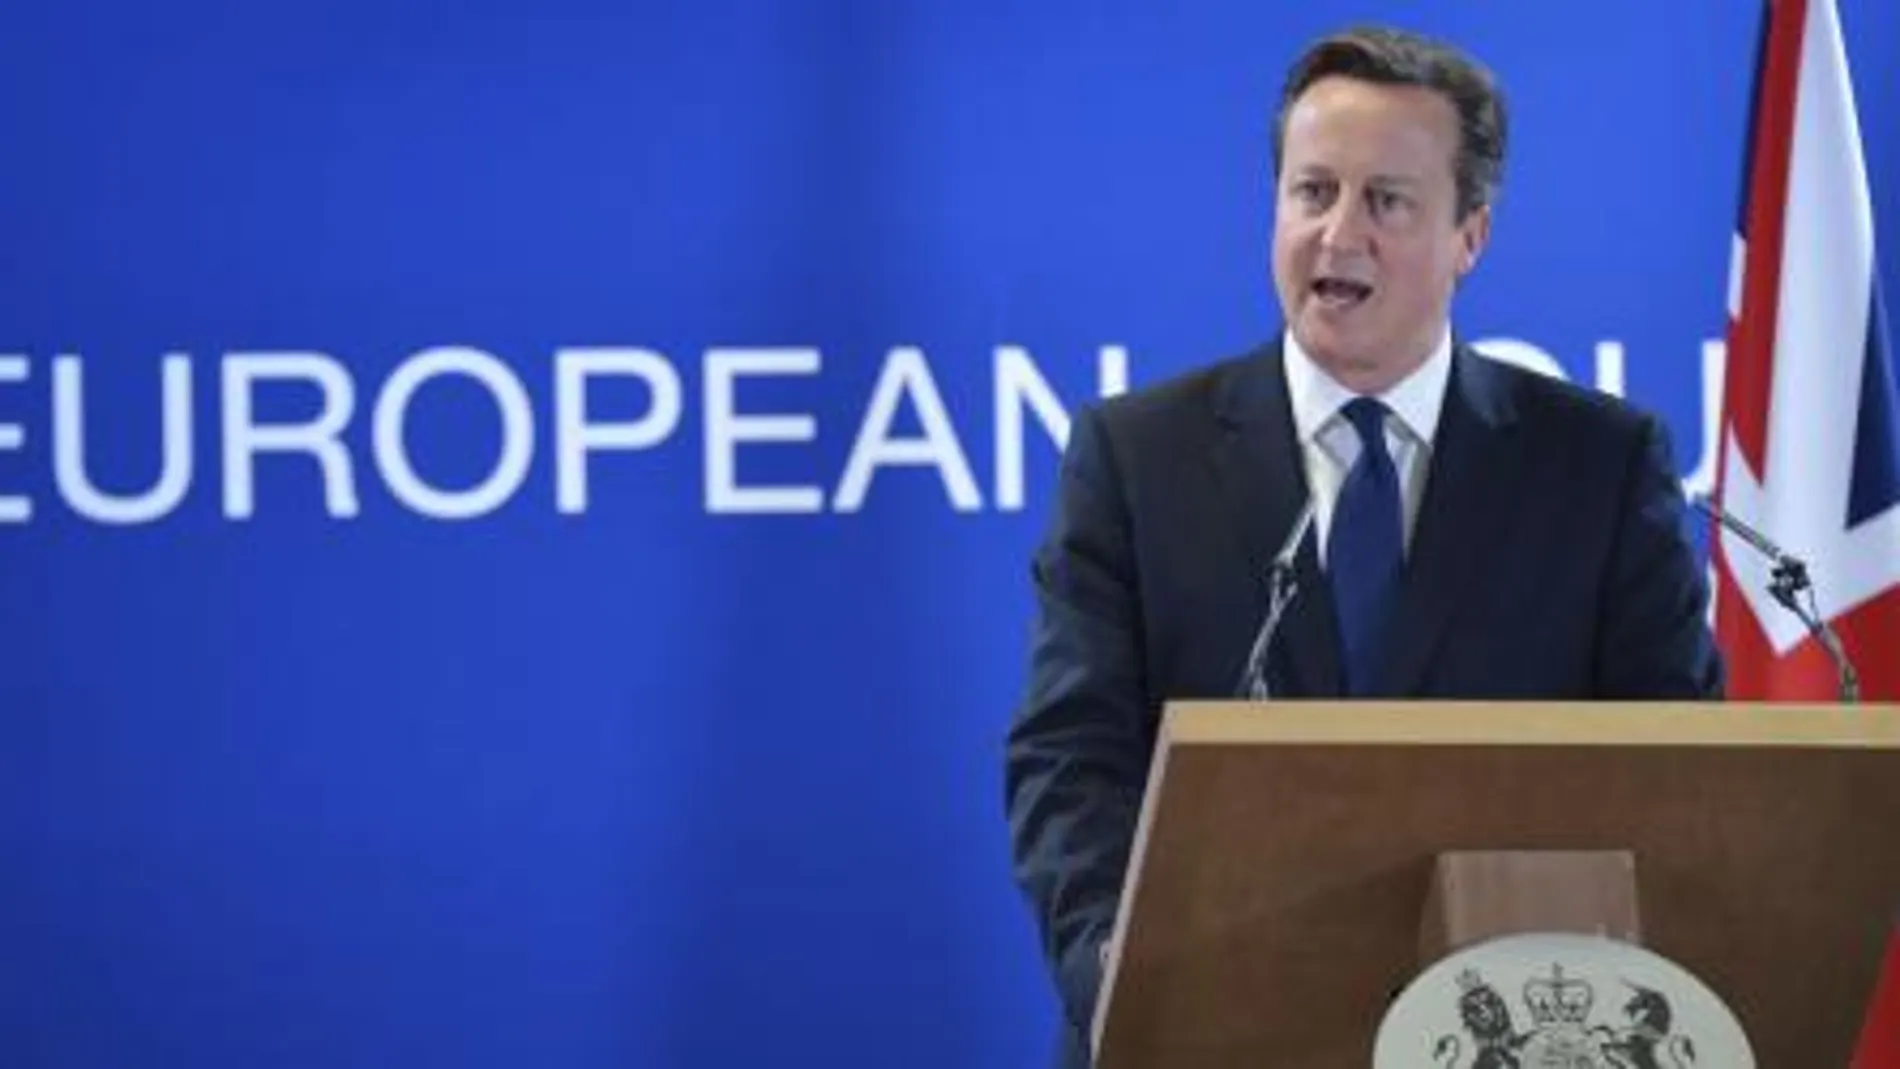 El primer ministro del Reino Unido, David Cameron, comparece en una rueda de prensa tras la cumbre de la Unión Europea en Bruselas